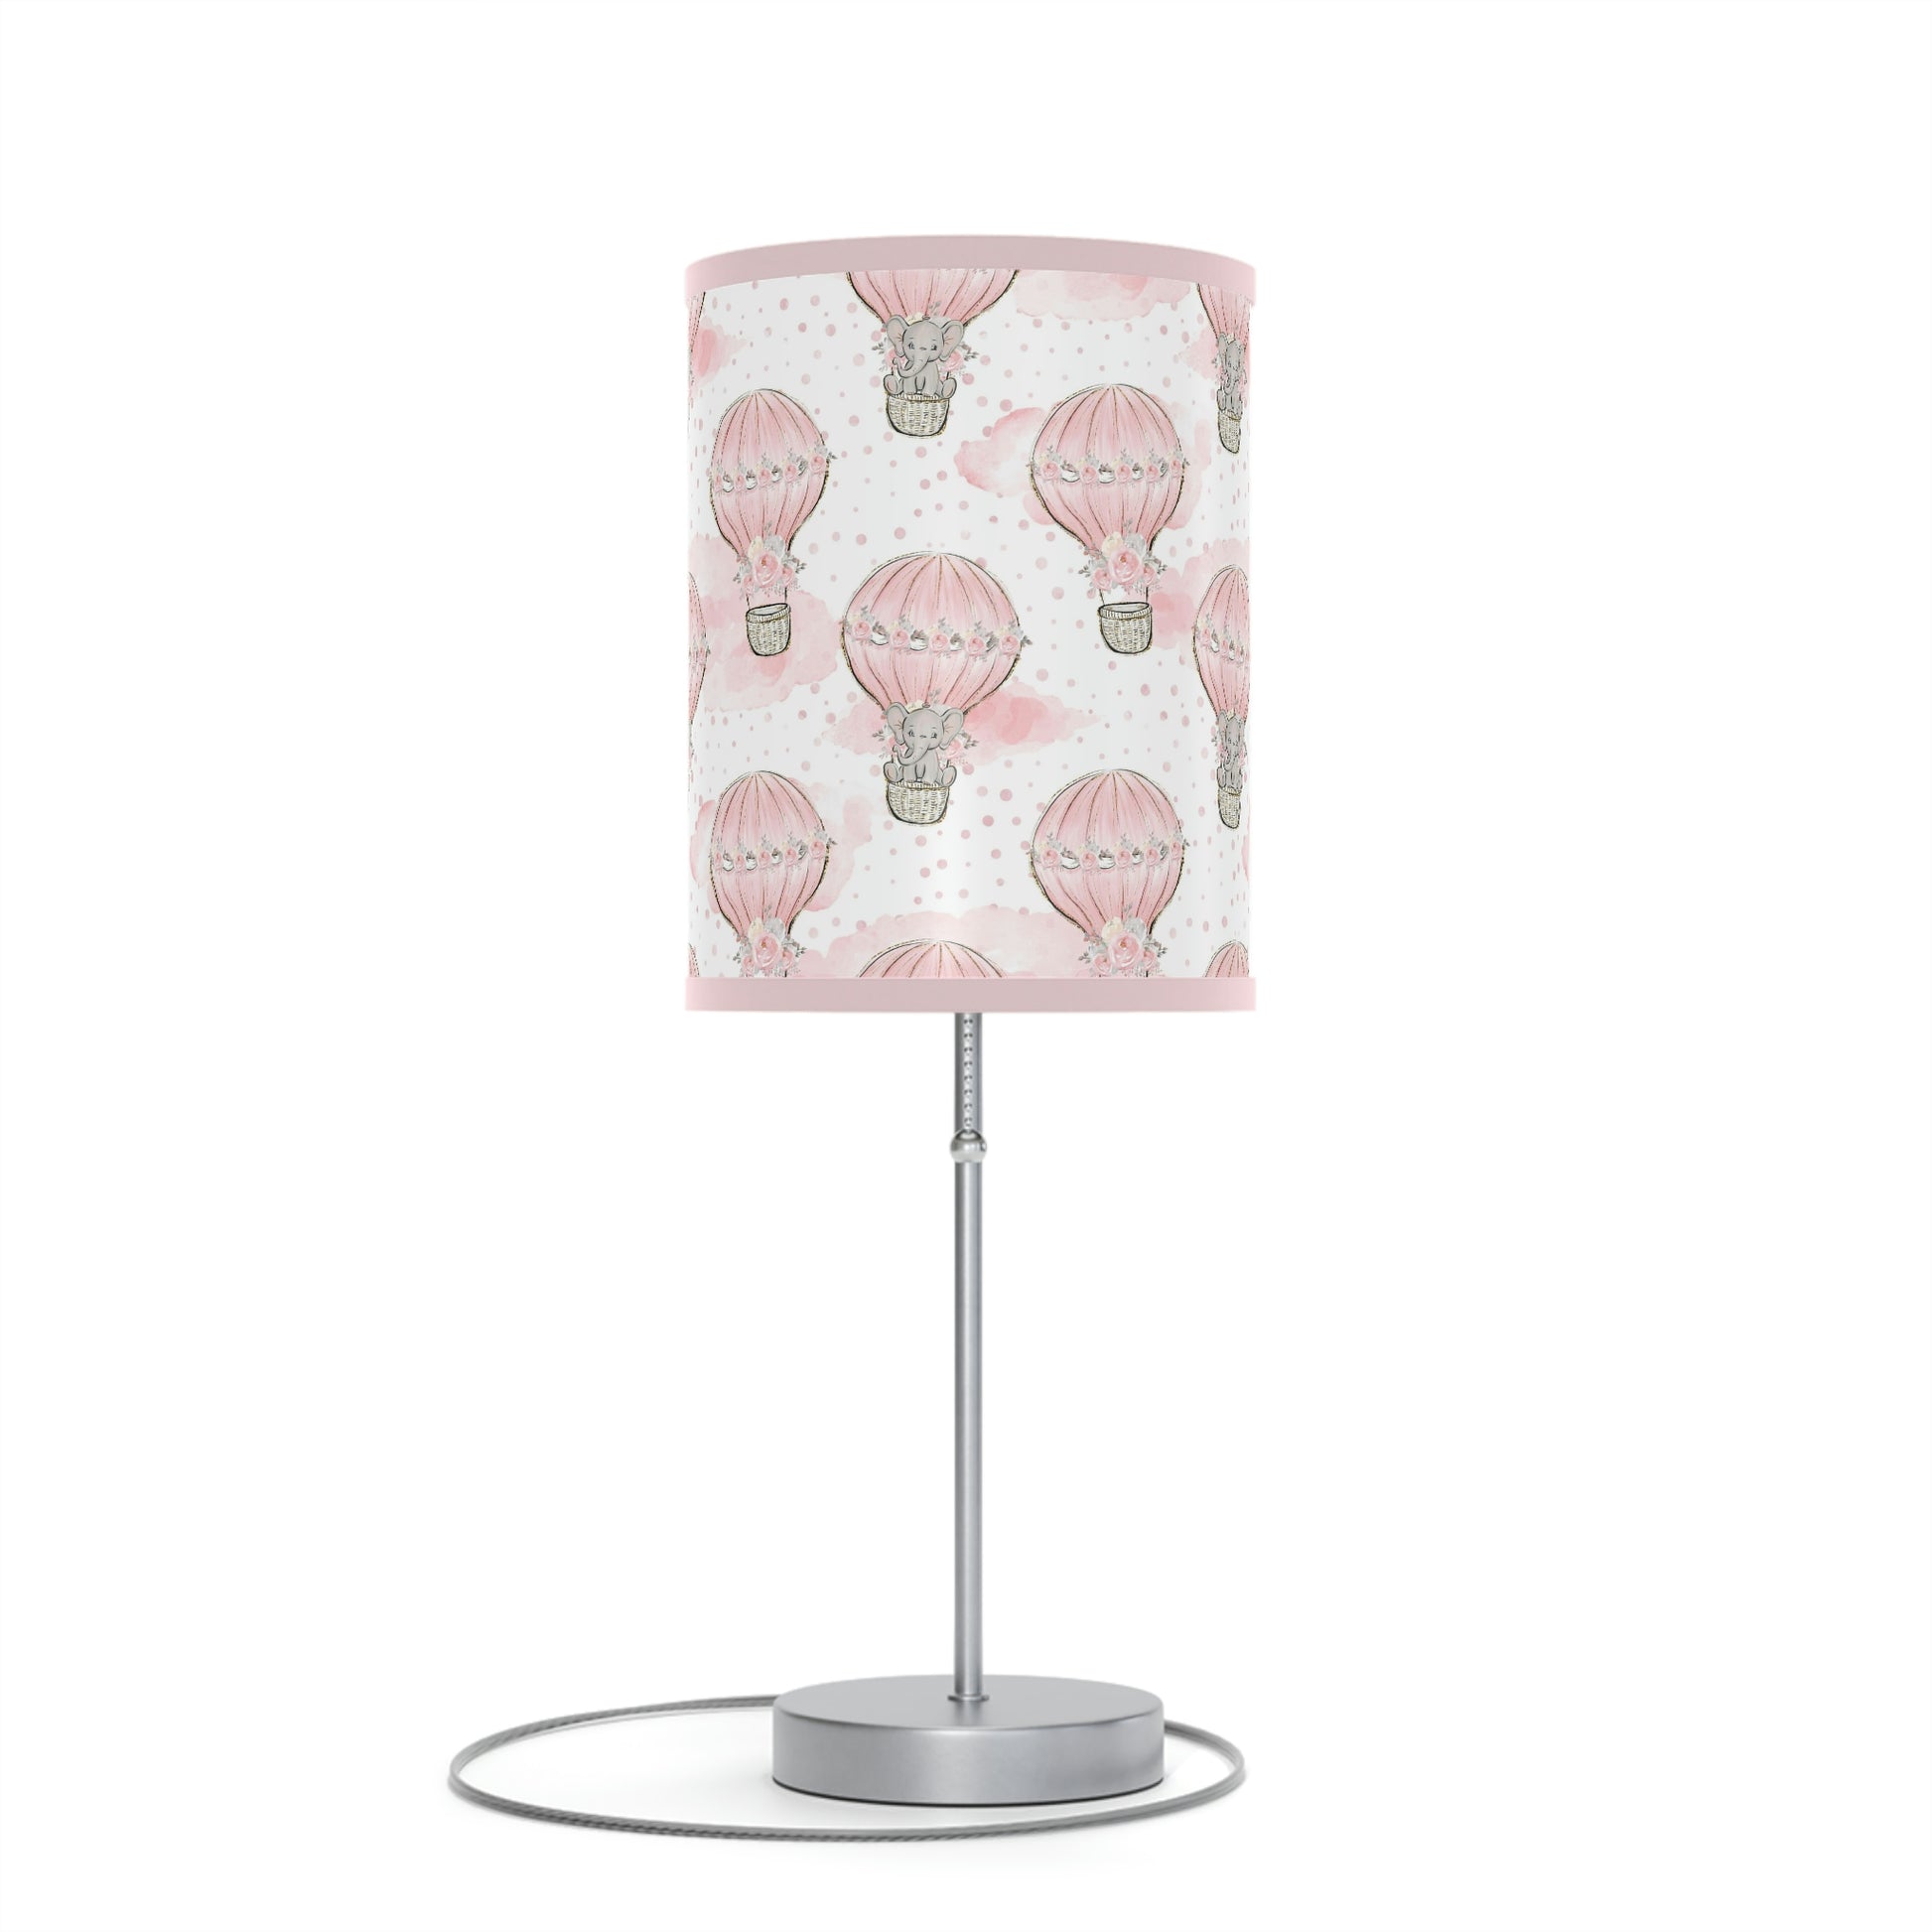 hot air balloon nursery lamp, elephant nursery lamp, nursery lamp, table lamp, light for nursery